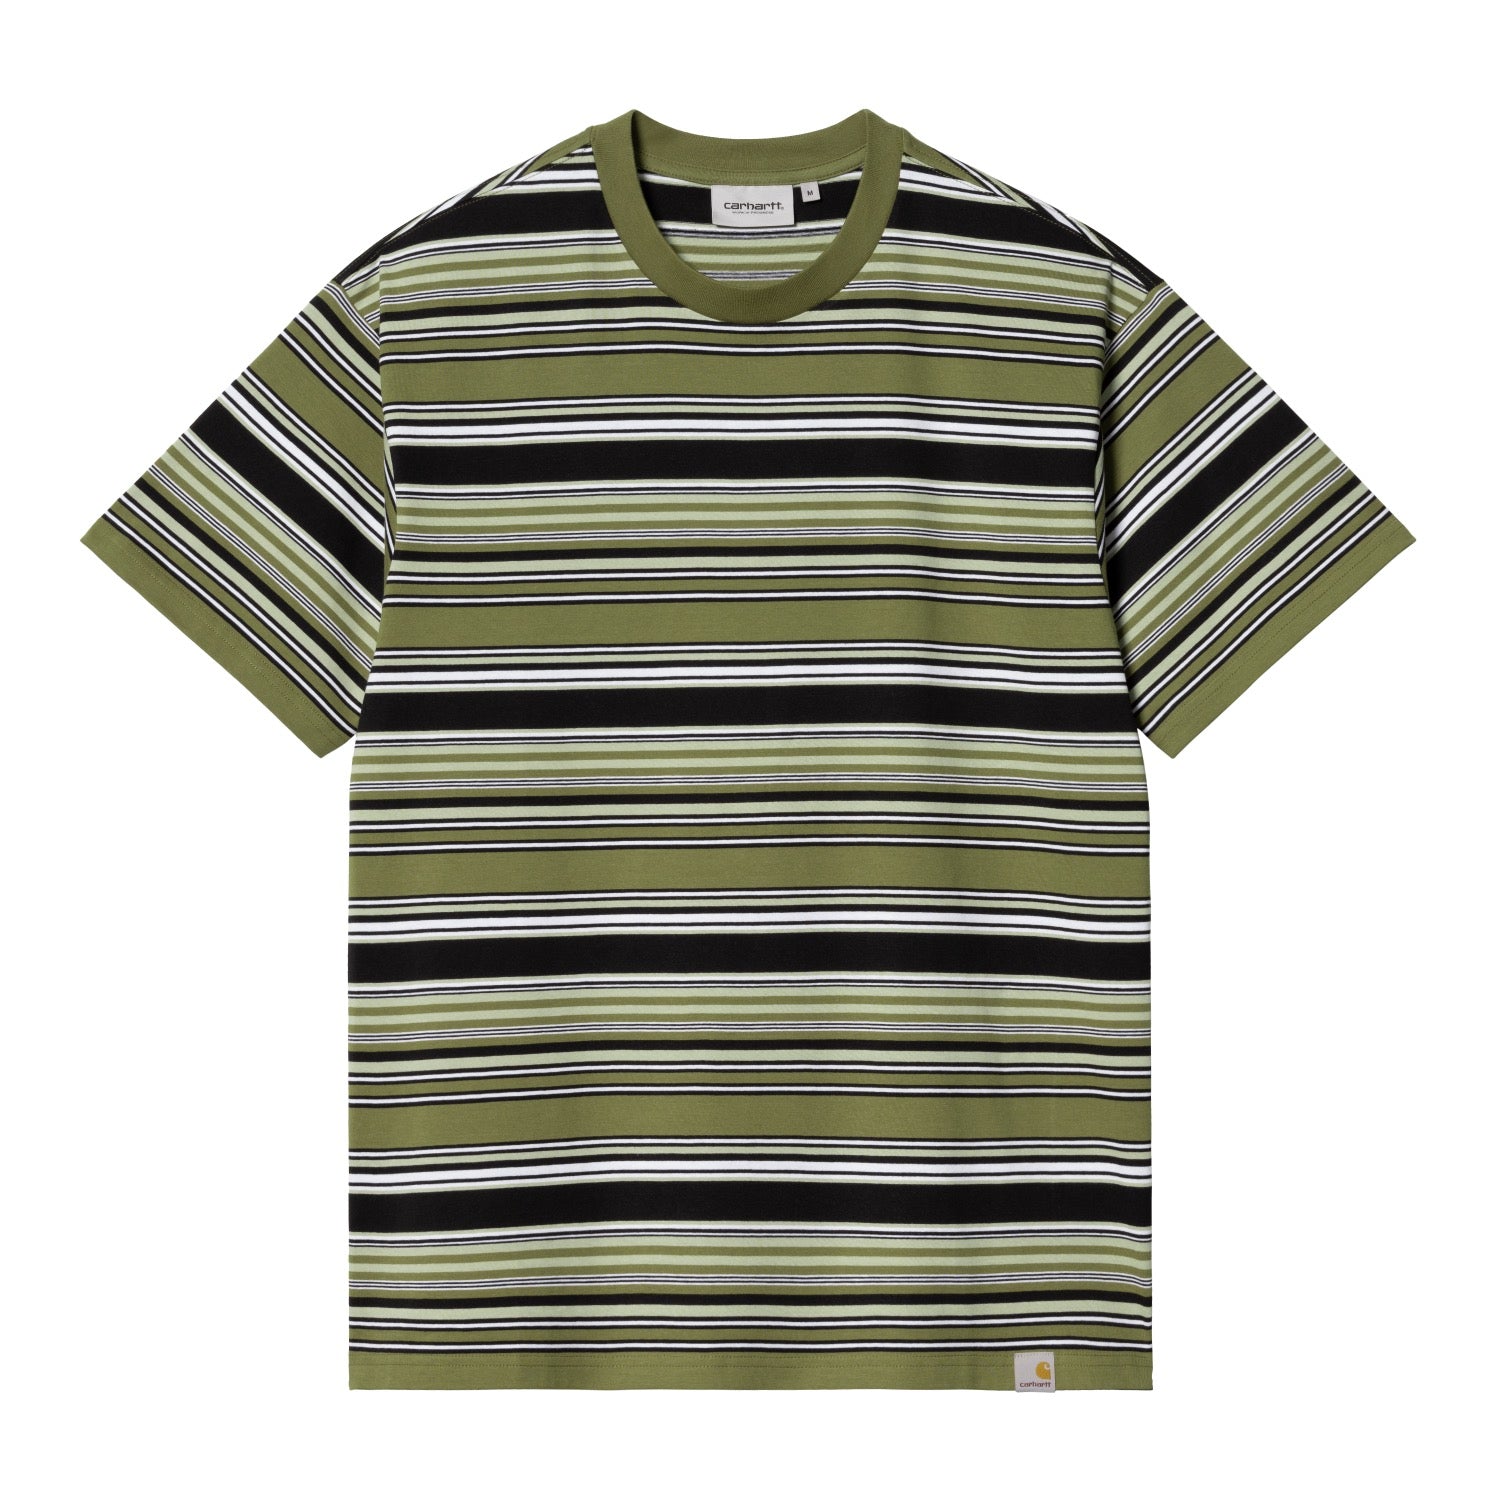 ショートスリーブラファティTシャツ | カーハート公式通販 - Carhartt